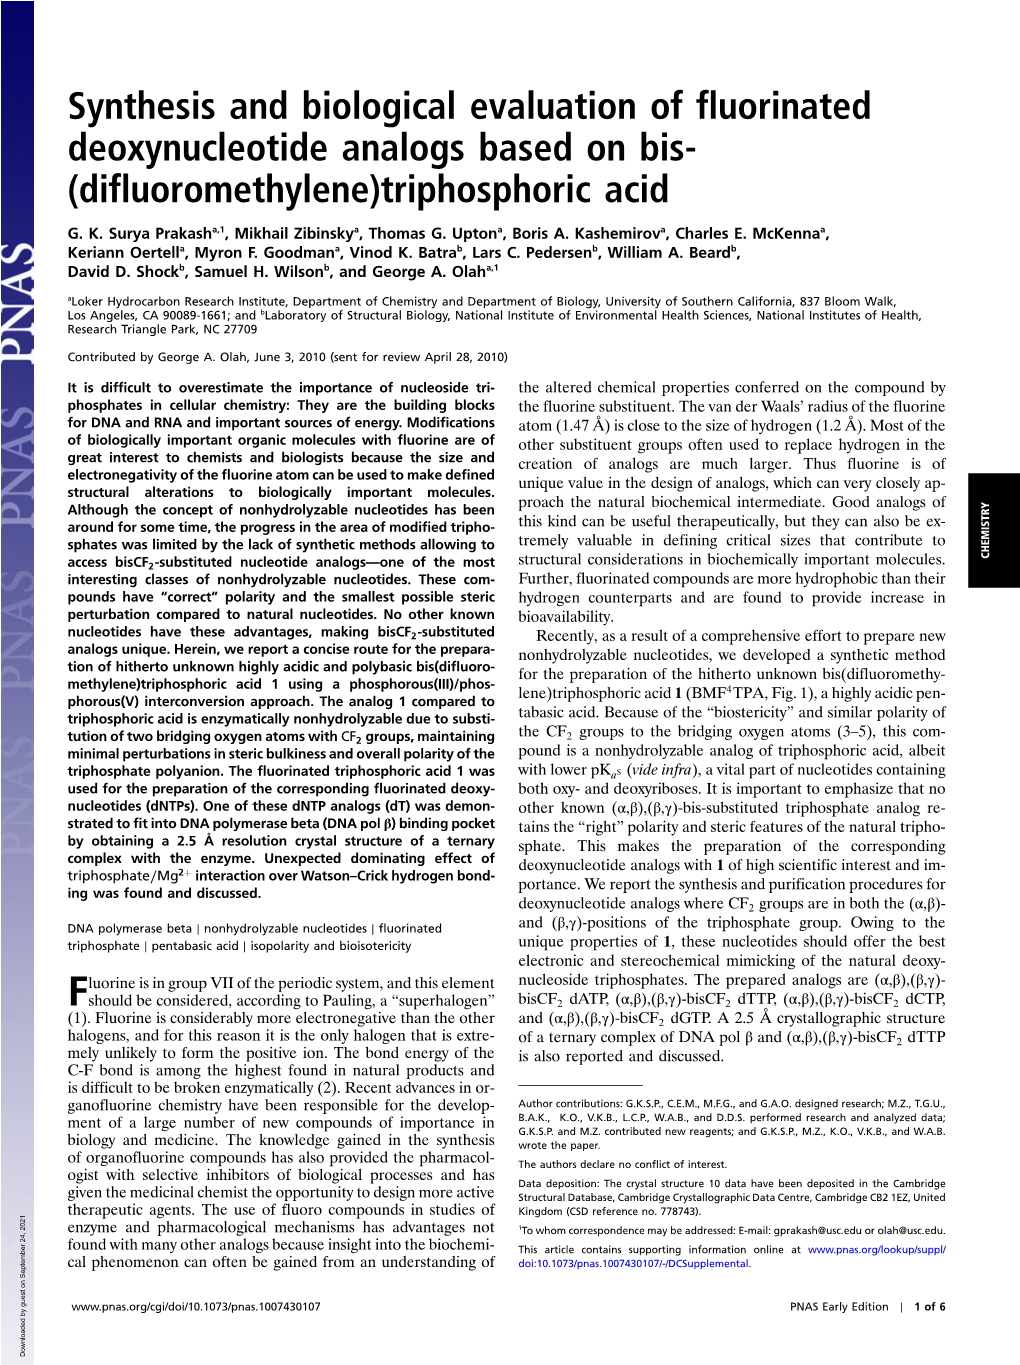 (Difluoromethylene)Triphosphoric Acid